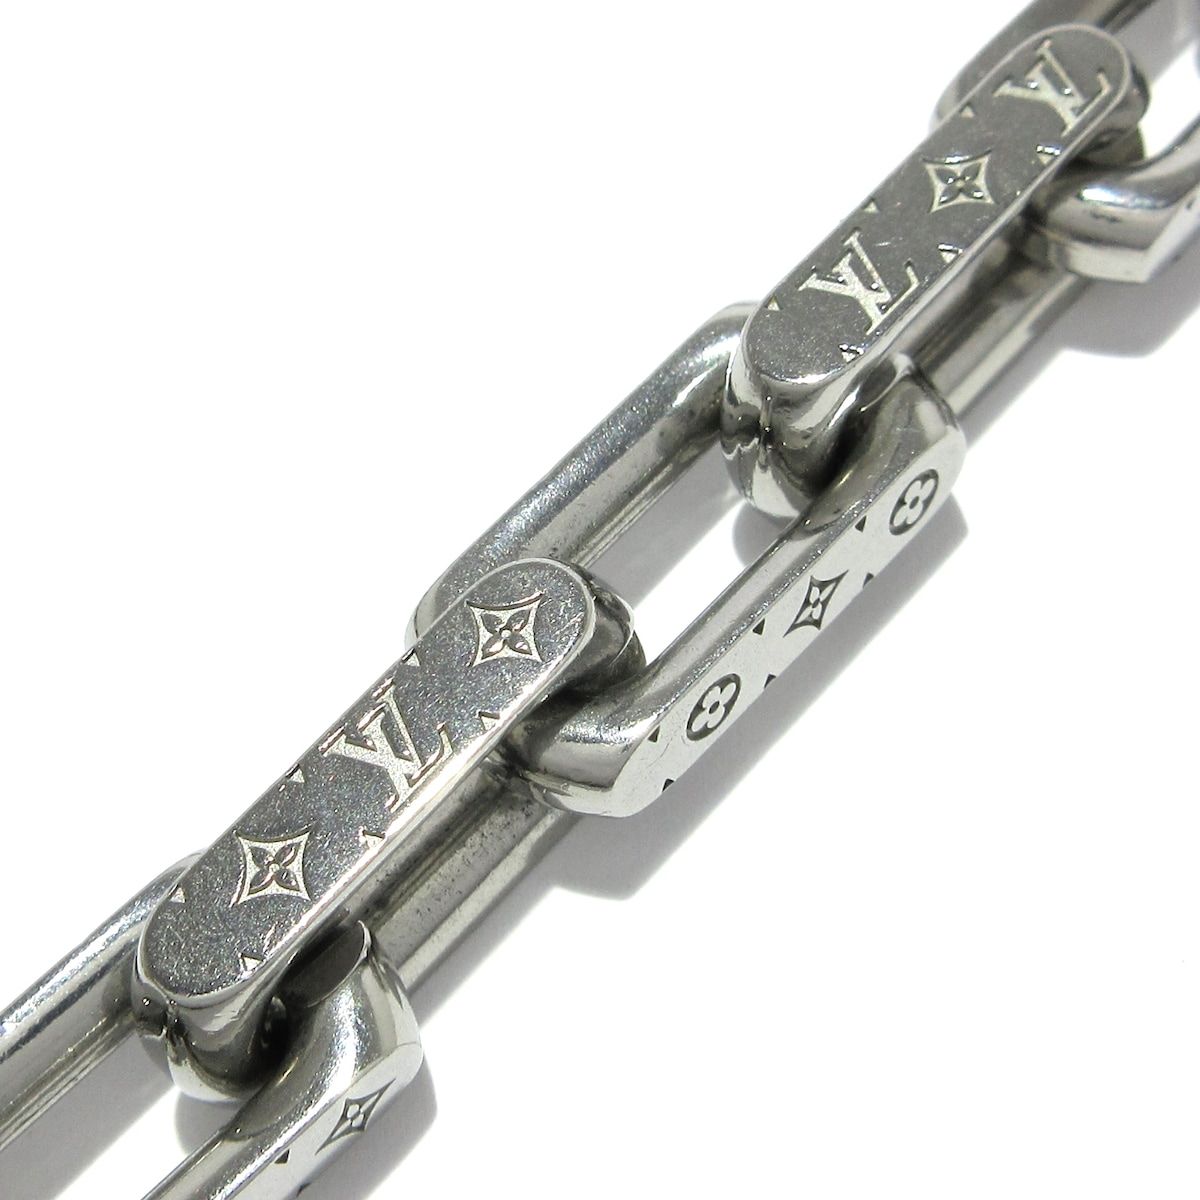 LOUIS VUITTON(ルイヴィトン) ネックレス美品 ネックレスチェーンモノグラム M00307 金属素材 シルバー